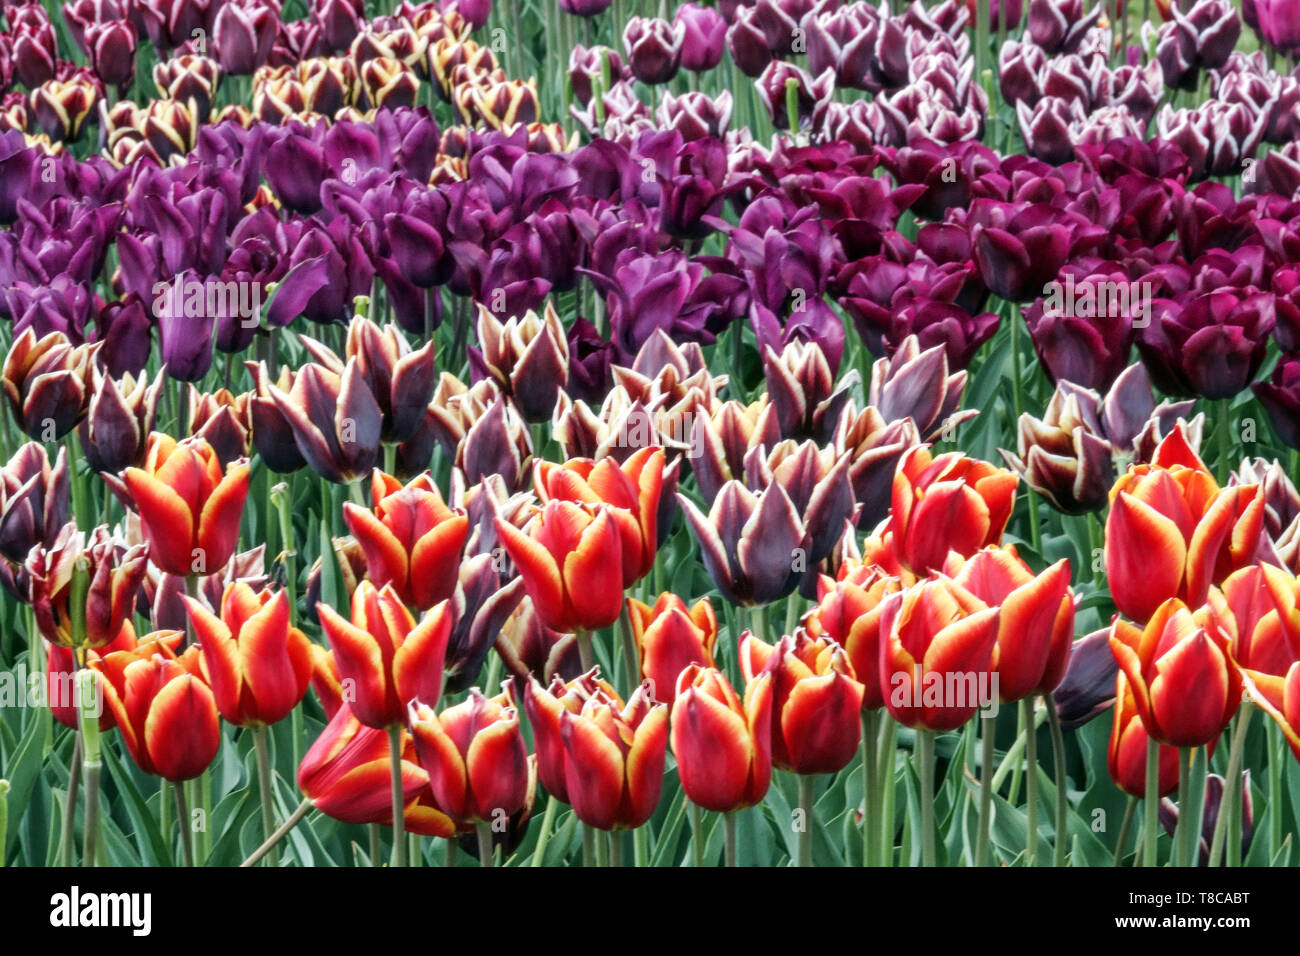 Farbenfroher Blumenbeet-Garten, gemischte Tulpen Stockfoto